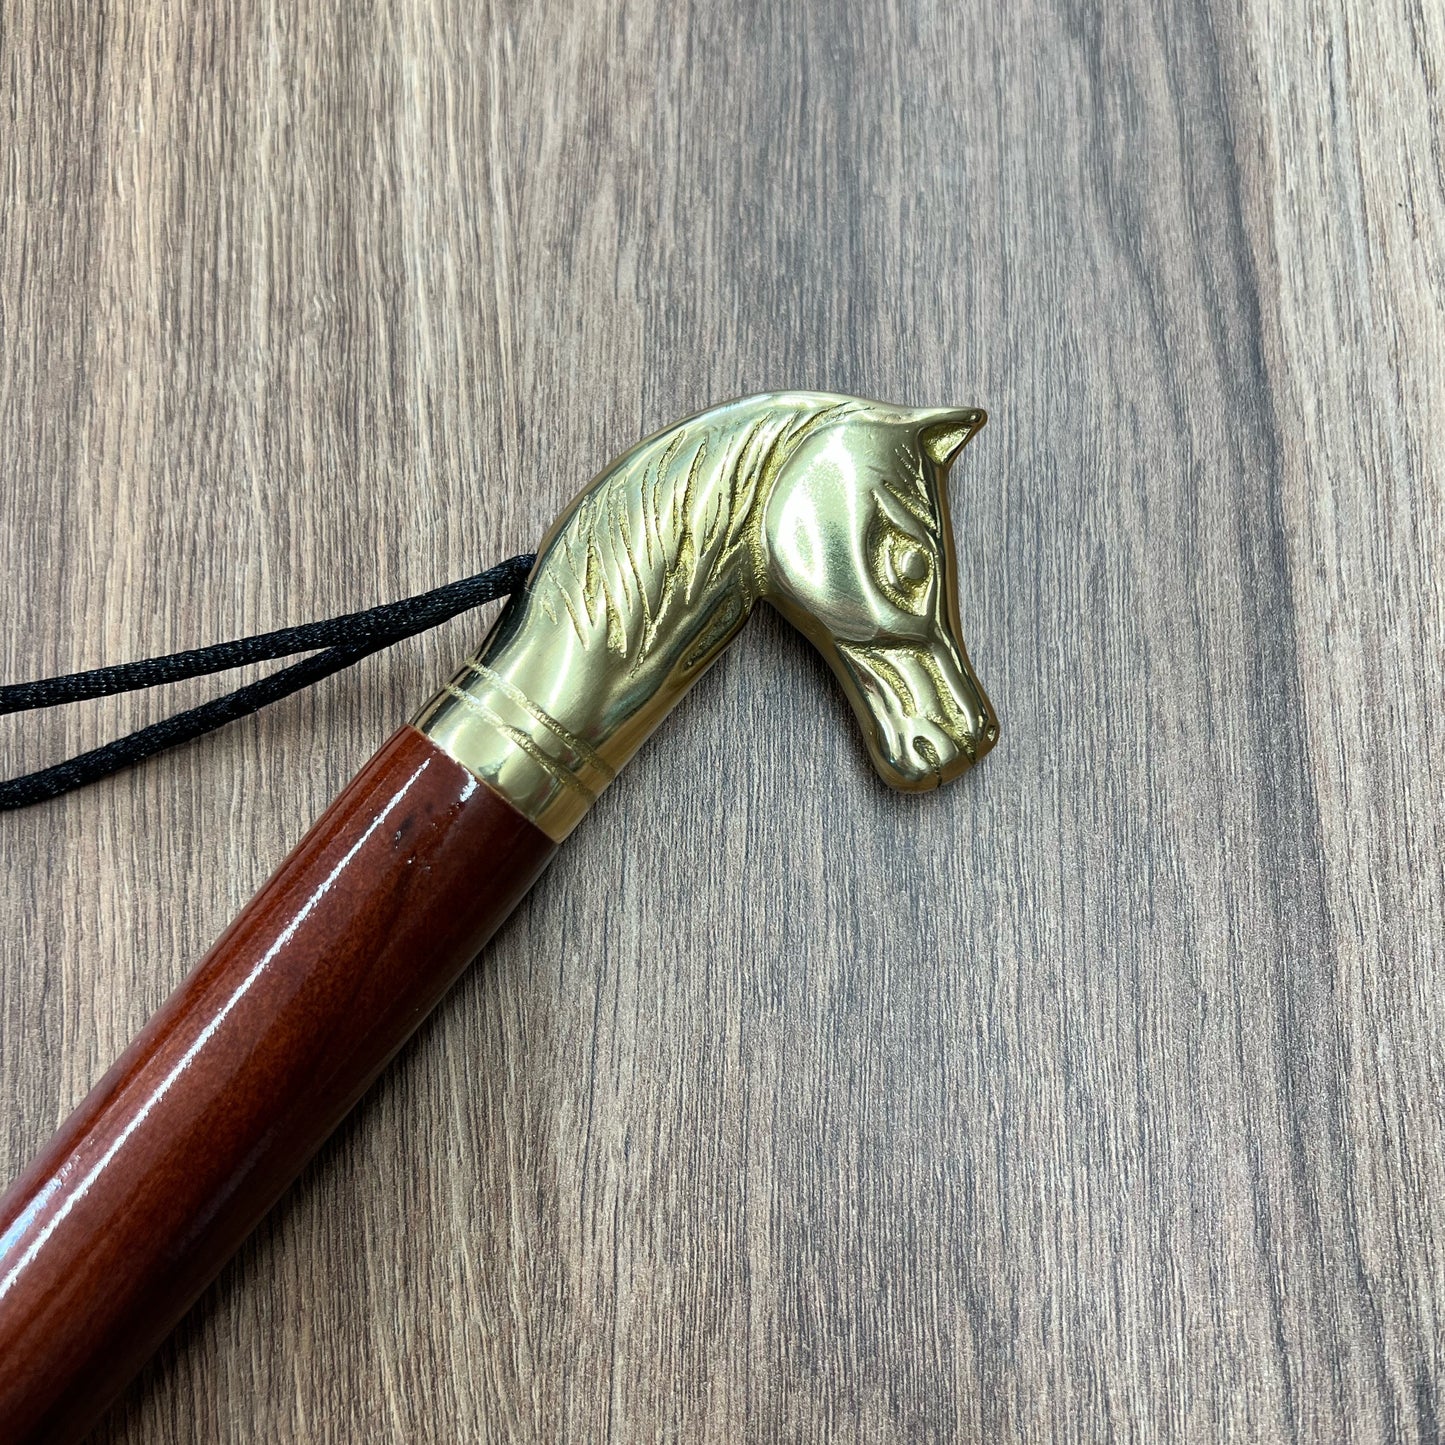 Saphir Imperial Brass Figure Head Shoe Horn